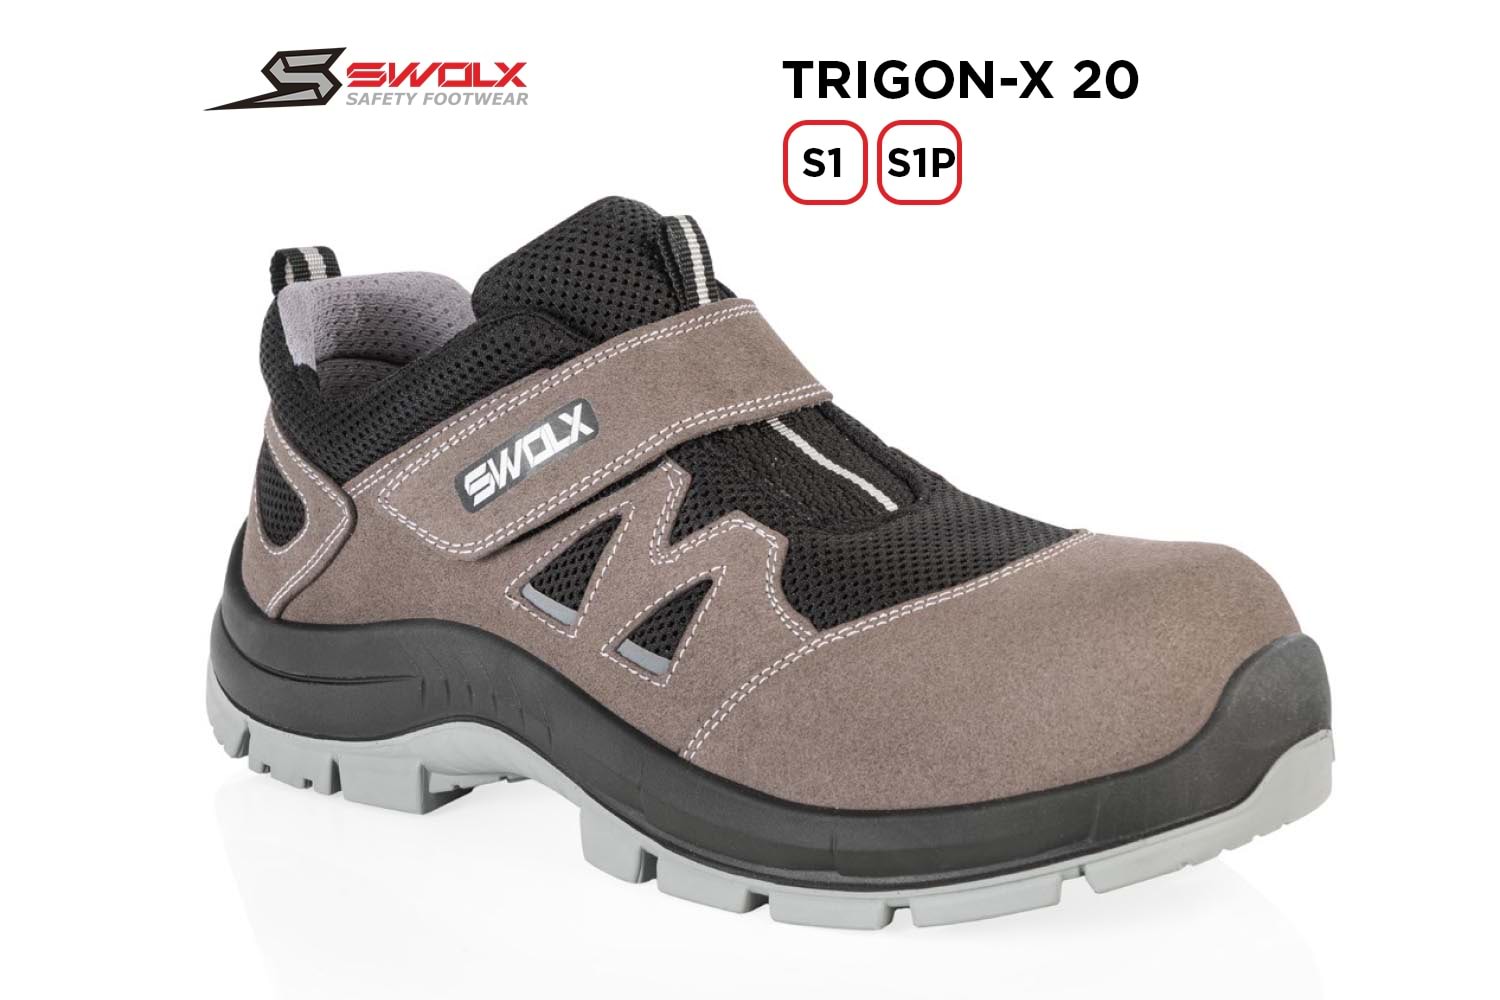 Swolx İş Ayakkabısı - Trigon-X 20 S1 - 43